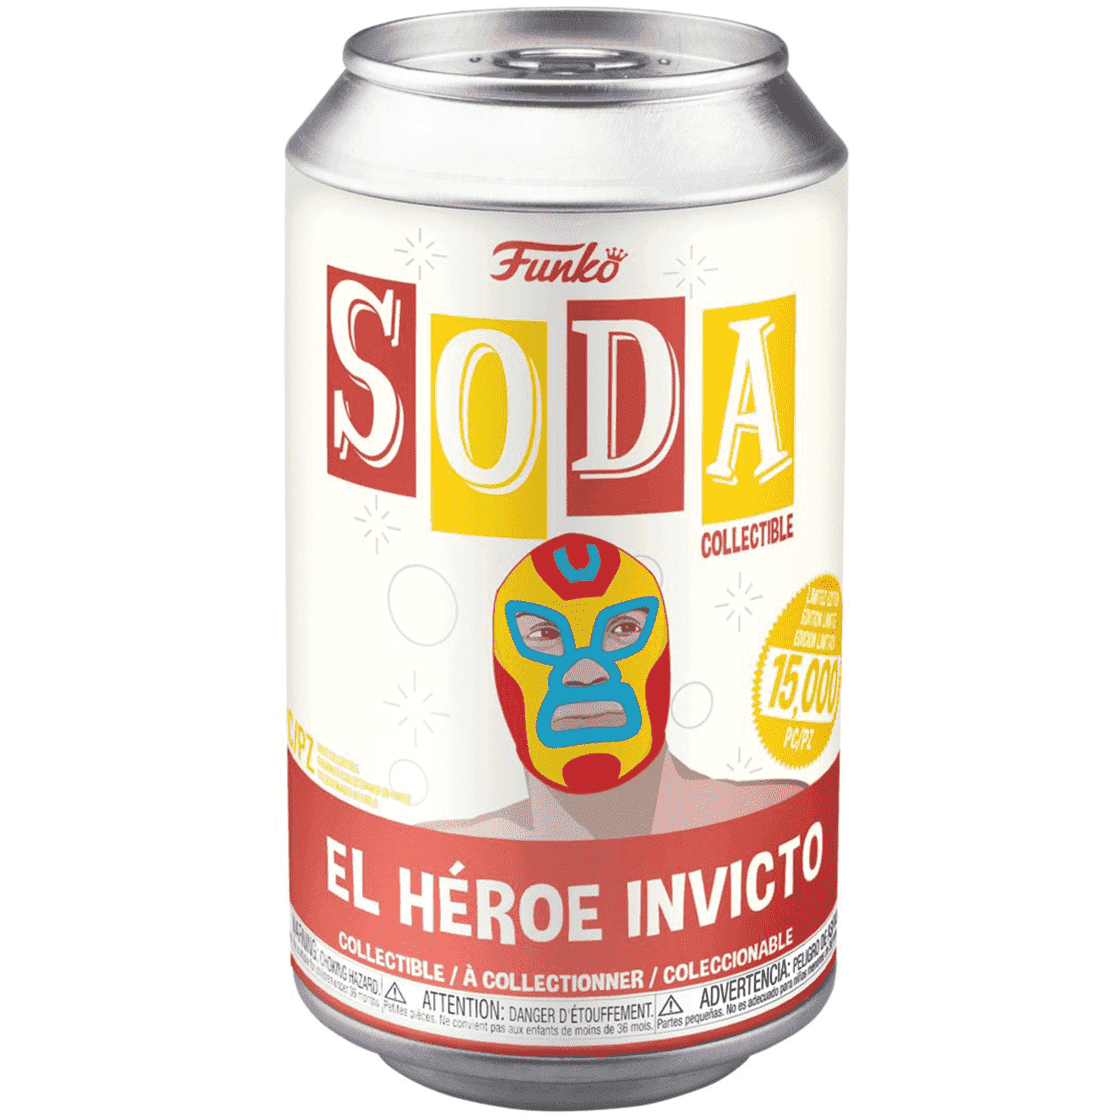 ***Edición Limitada*** Funko Soda Marvel, Iron Man Luchador El Heroe Invicto